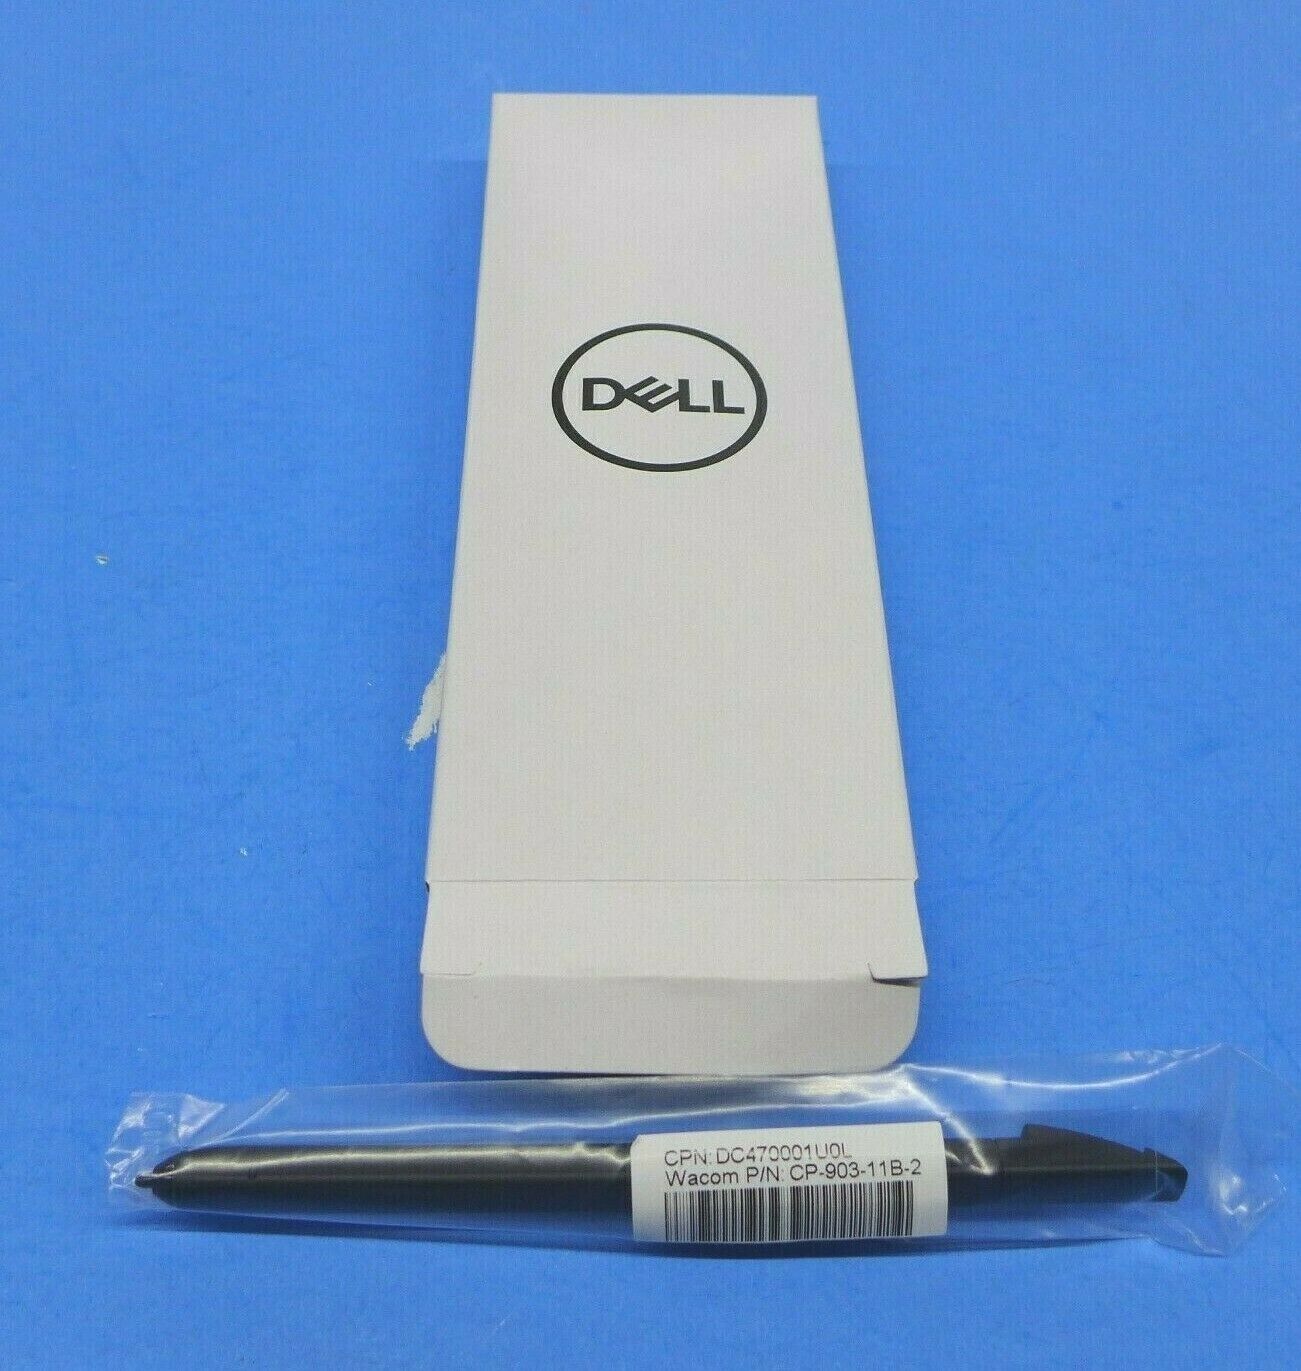 Citron kød Virus NEW Dell Chromebook 7486 2-in-1 Stylus Pen CP-903-11B-2 X000M | eBay